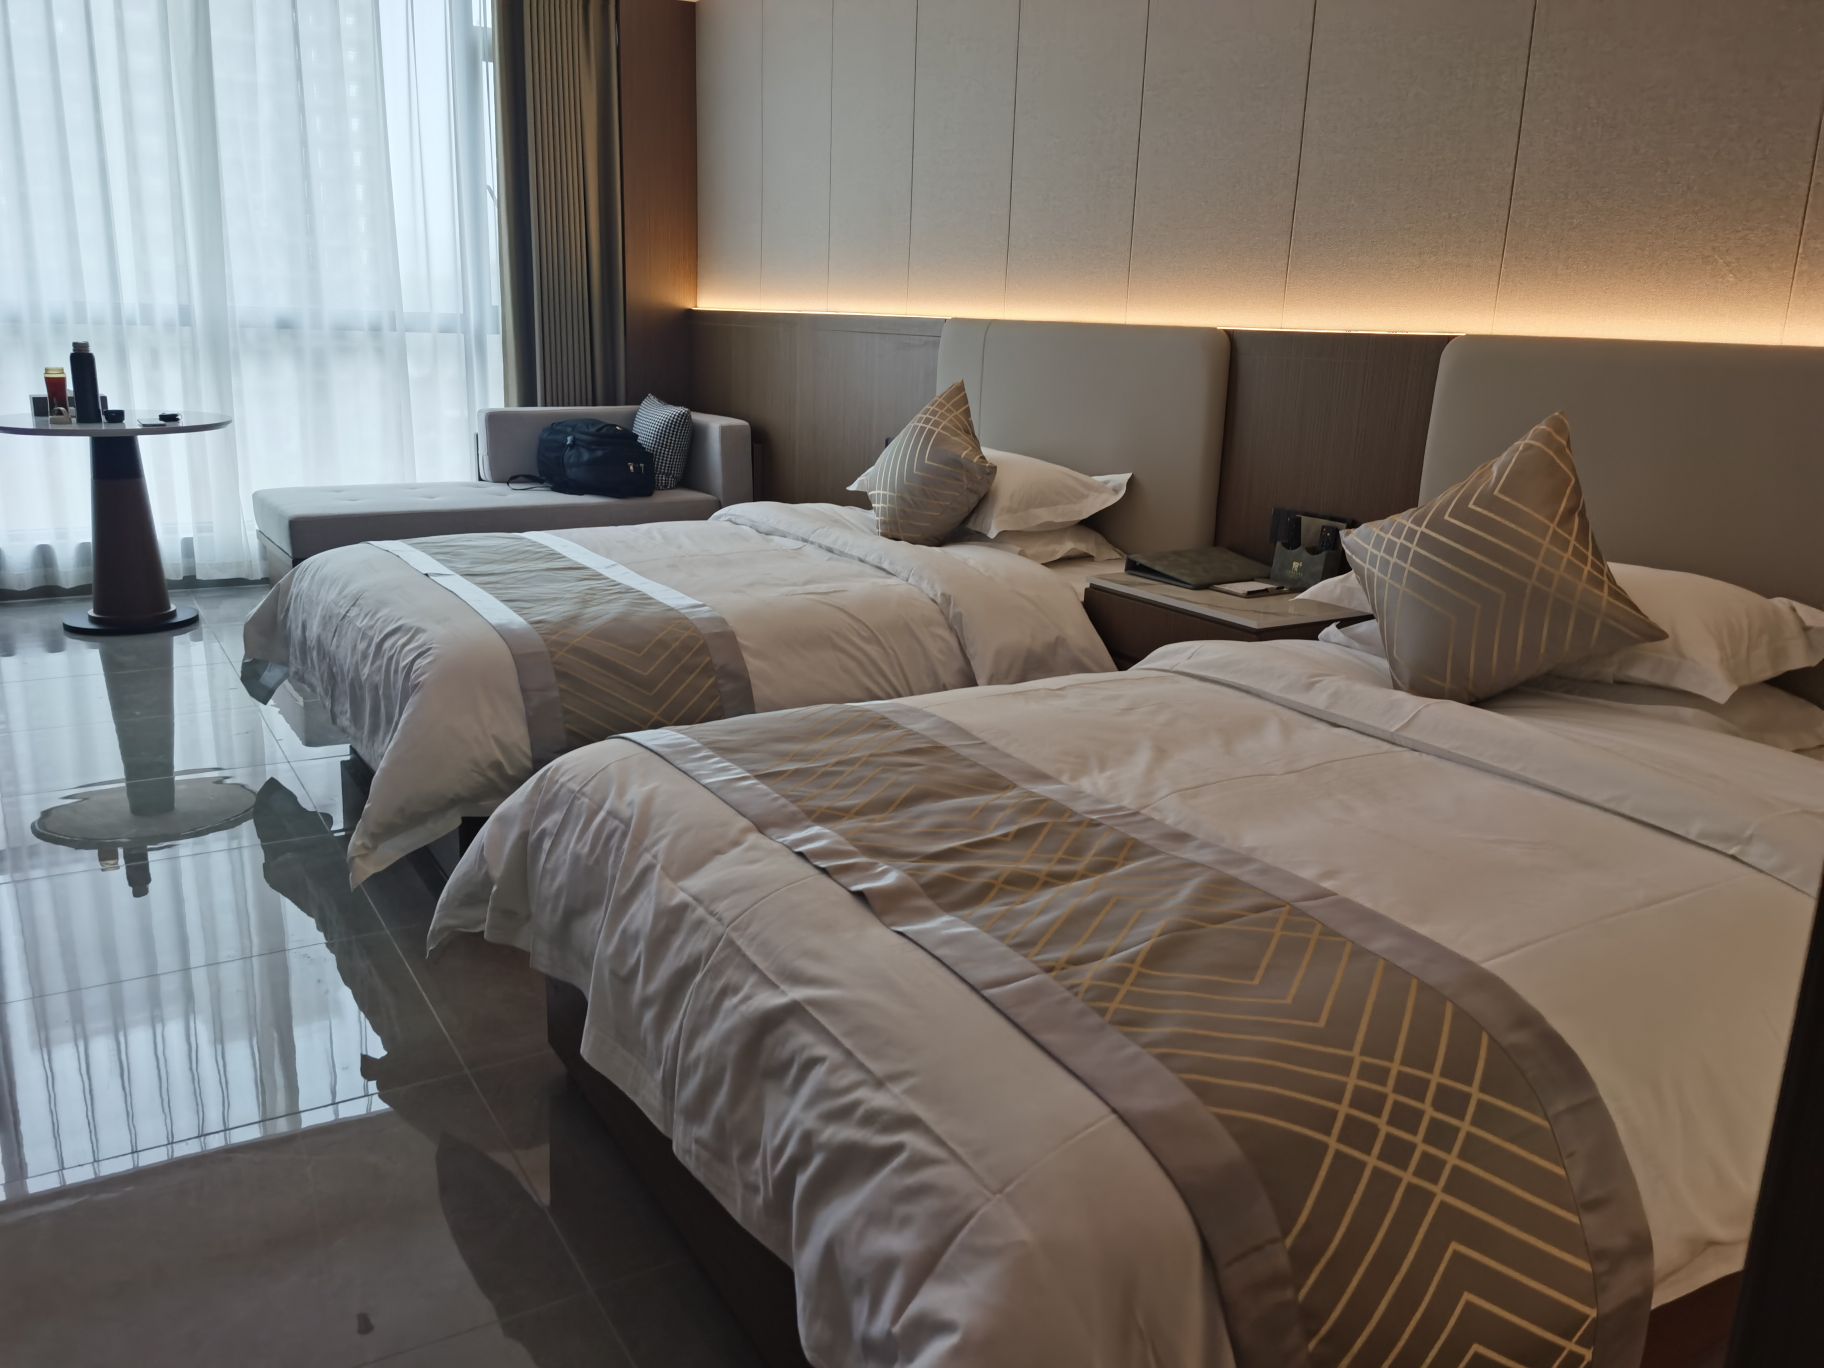 房间特别干净整洁，宽敞明亮，不亏是国际大酒店。床，被褥和枕头都特别新，睡觉特别舒服。服务特别好，热情